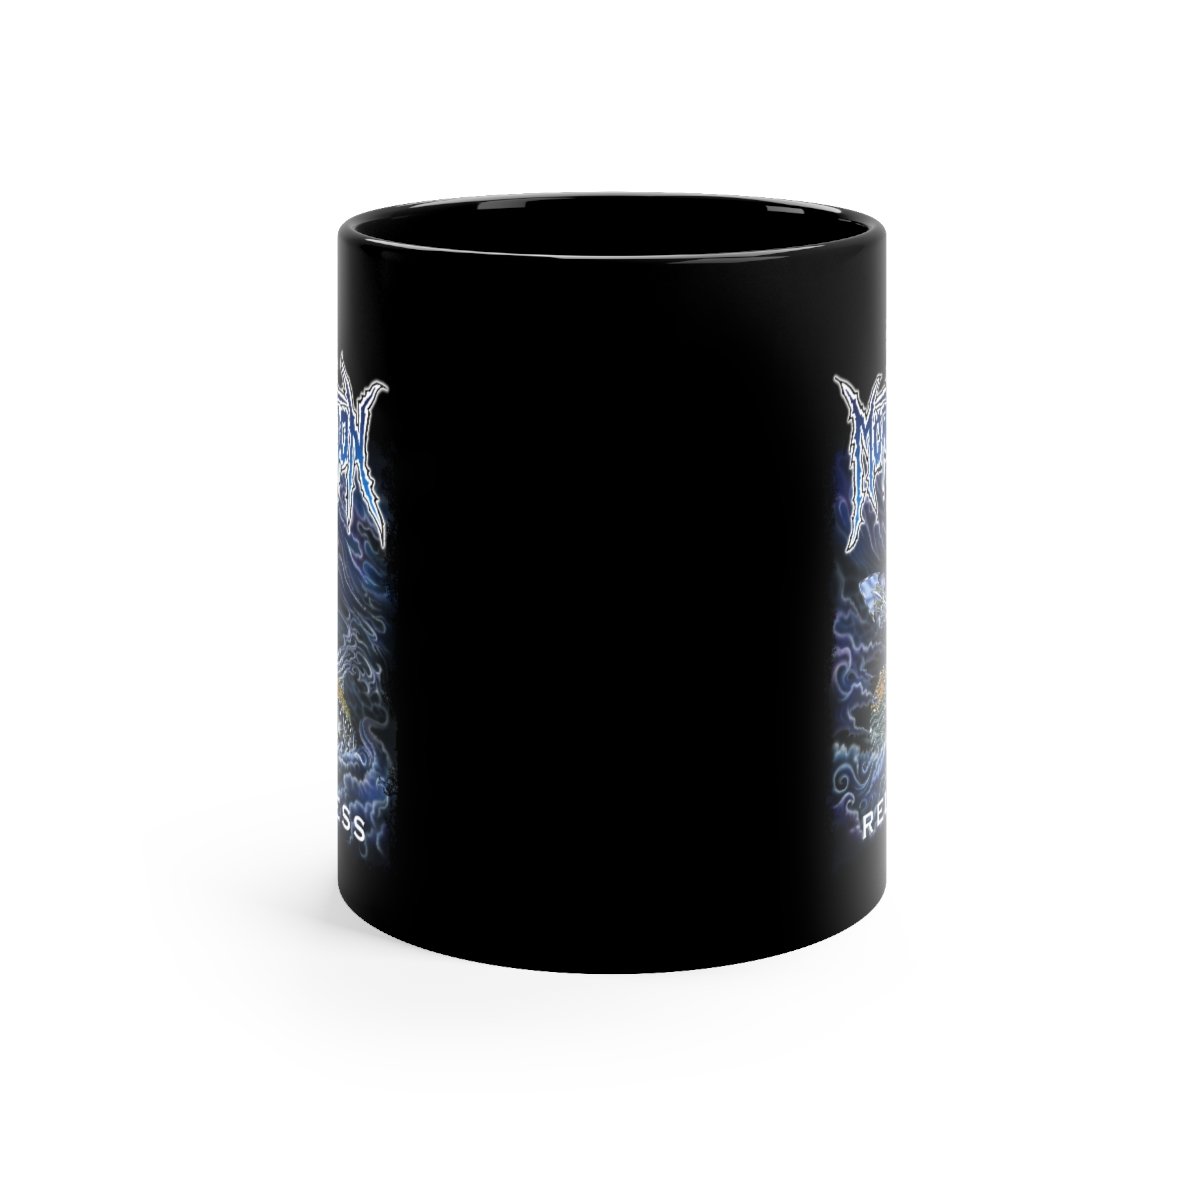 Mortification – Relentless 11oz Black mug